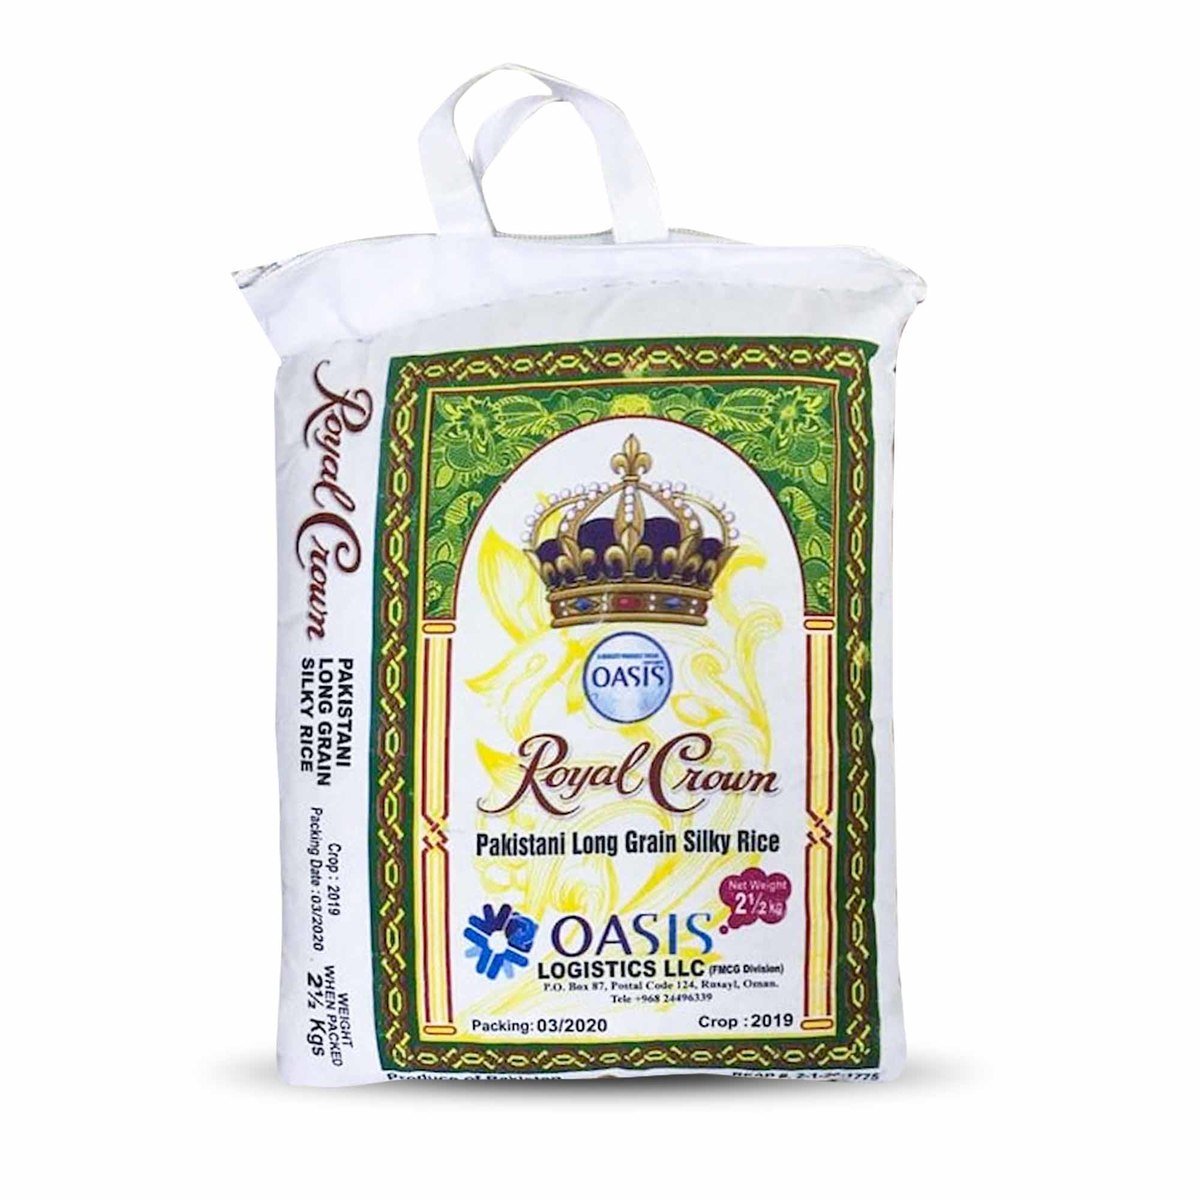 التاج الملكي أرز حريري باكستاني طويل الحبة 2.5 كجم